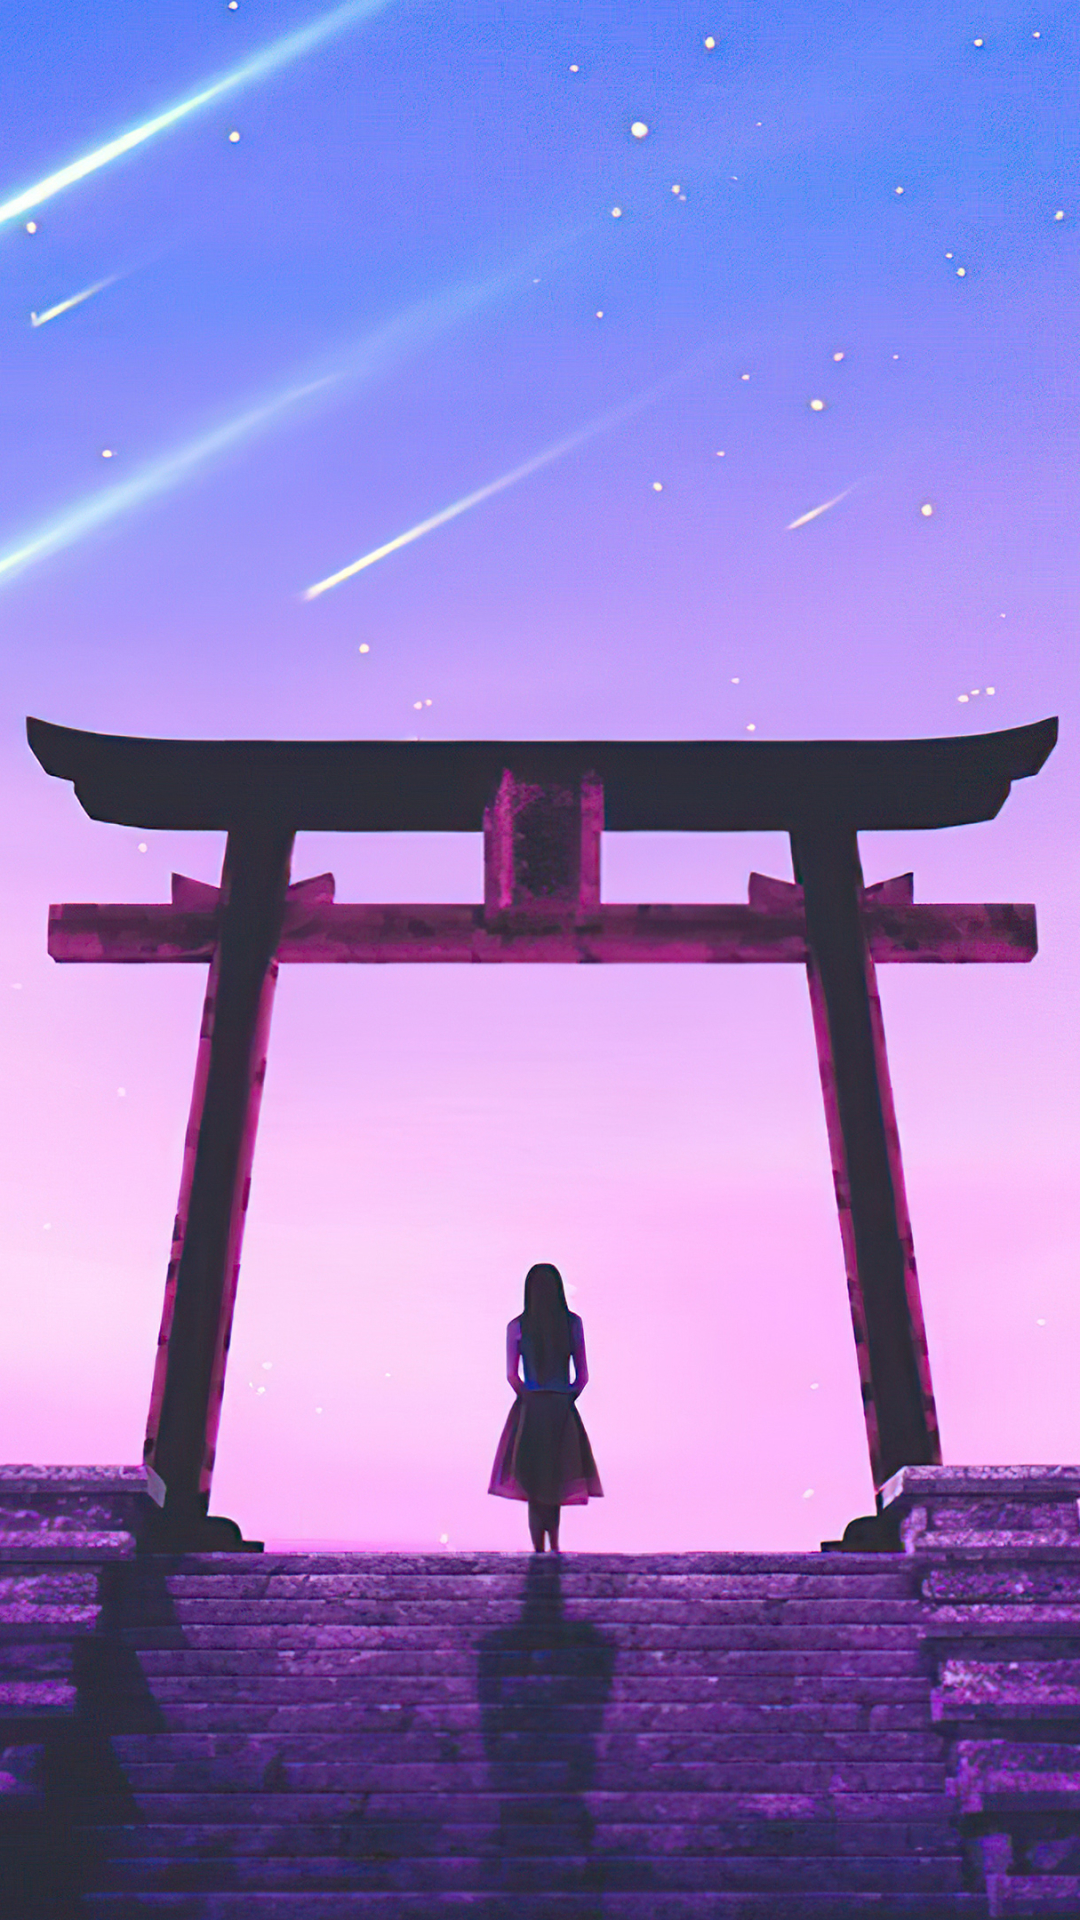 Download mobile wallpaper Anime, Torii, Shrine for free.